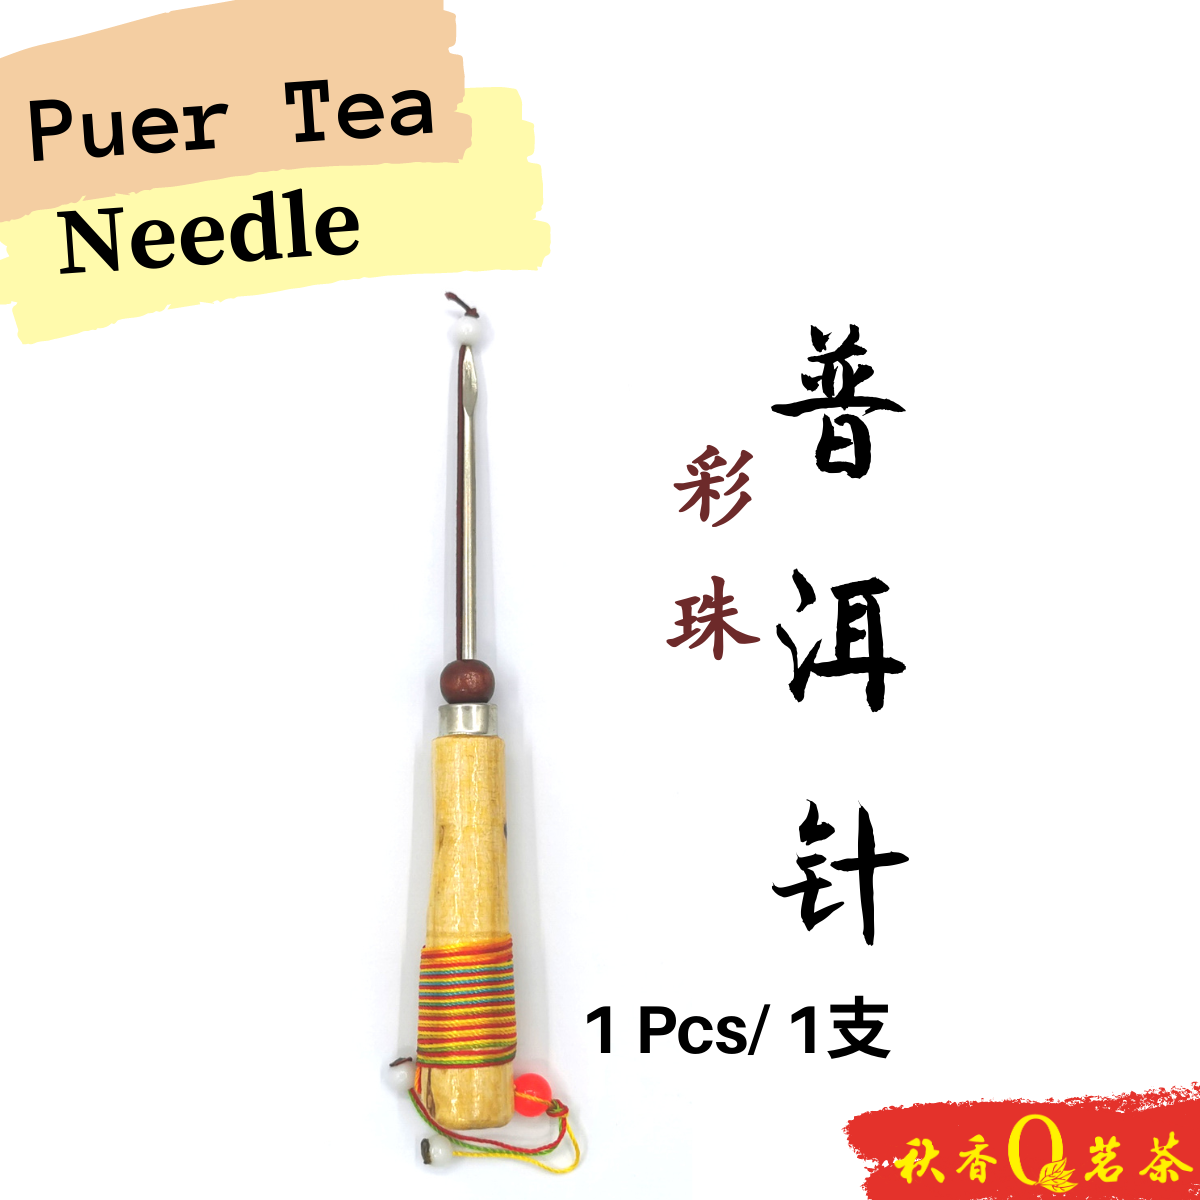 彩珠普洱针 Puer Tea Needle